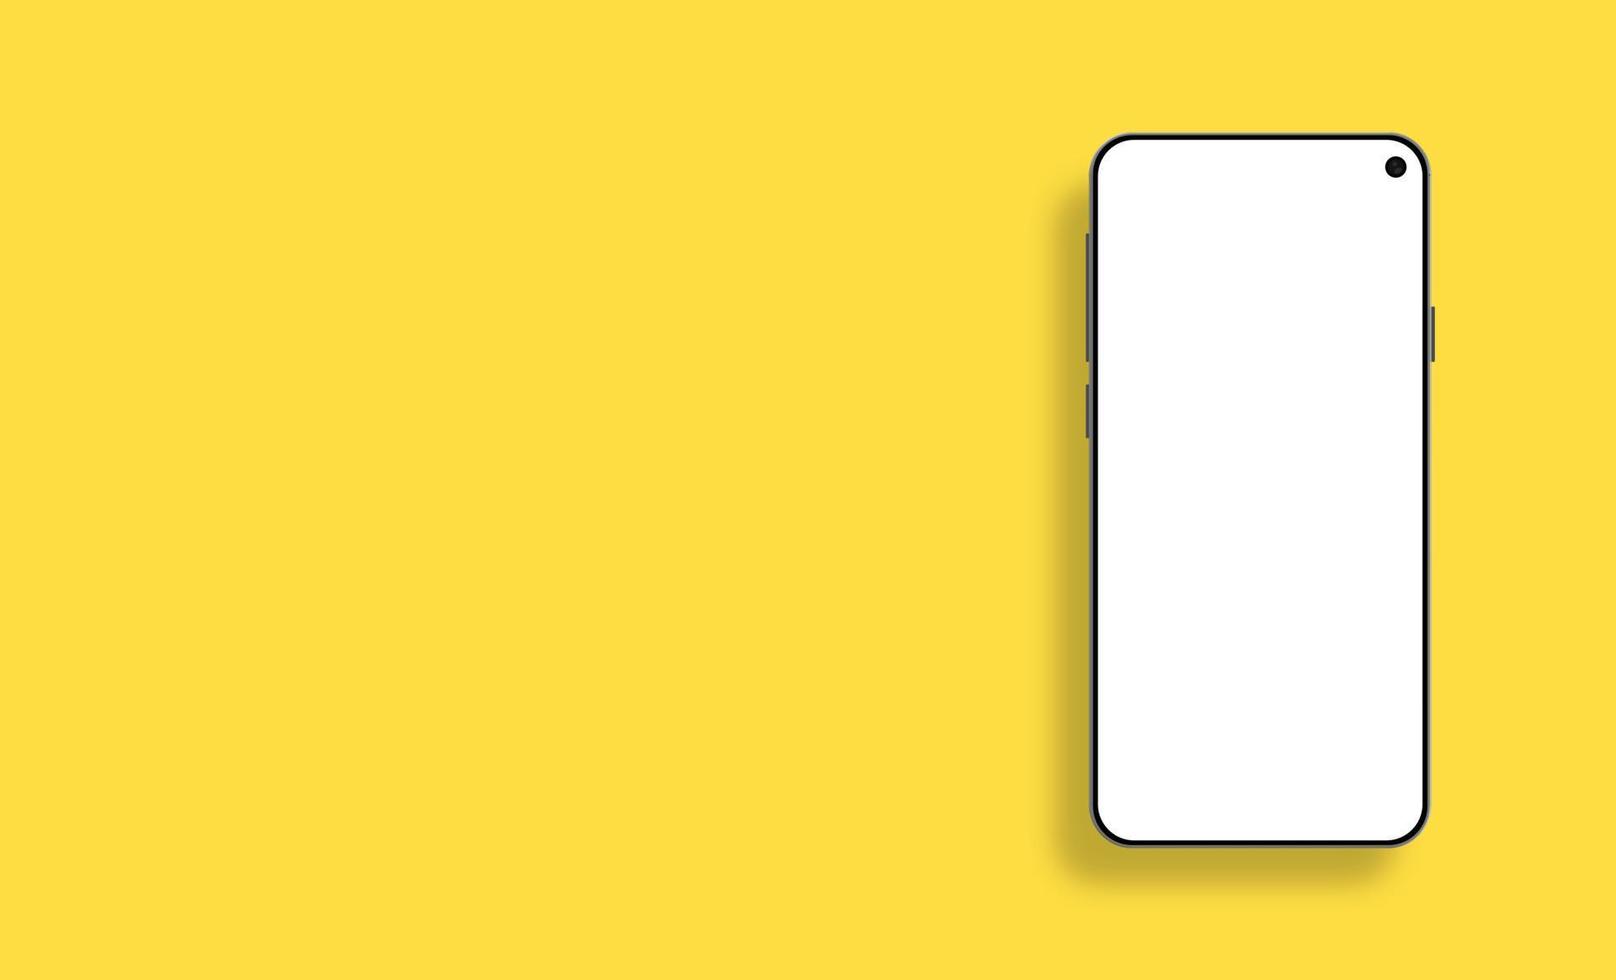 maqueta de smartphone realista aislado sobre fondo amarillo. vector concepto de dispositivo móvil para presentación, gráficos de información, visualización de aplicaciones, formato de vector eps de vista en perspectiva.